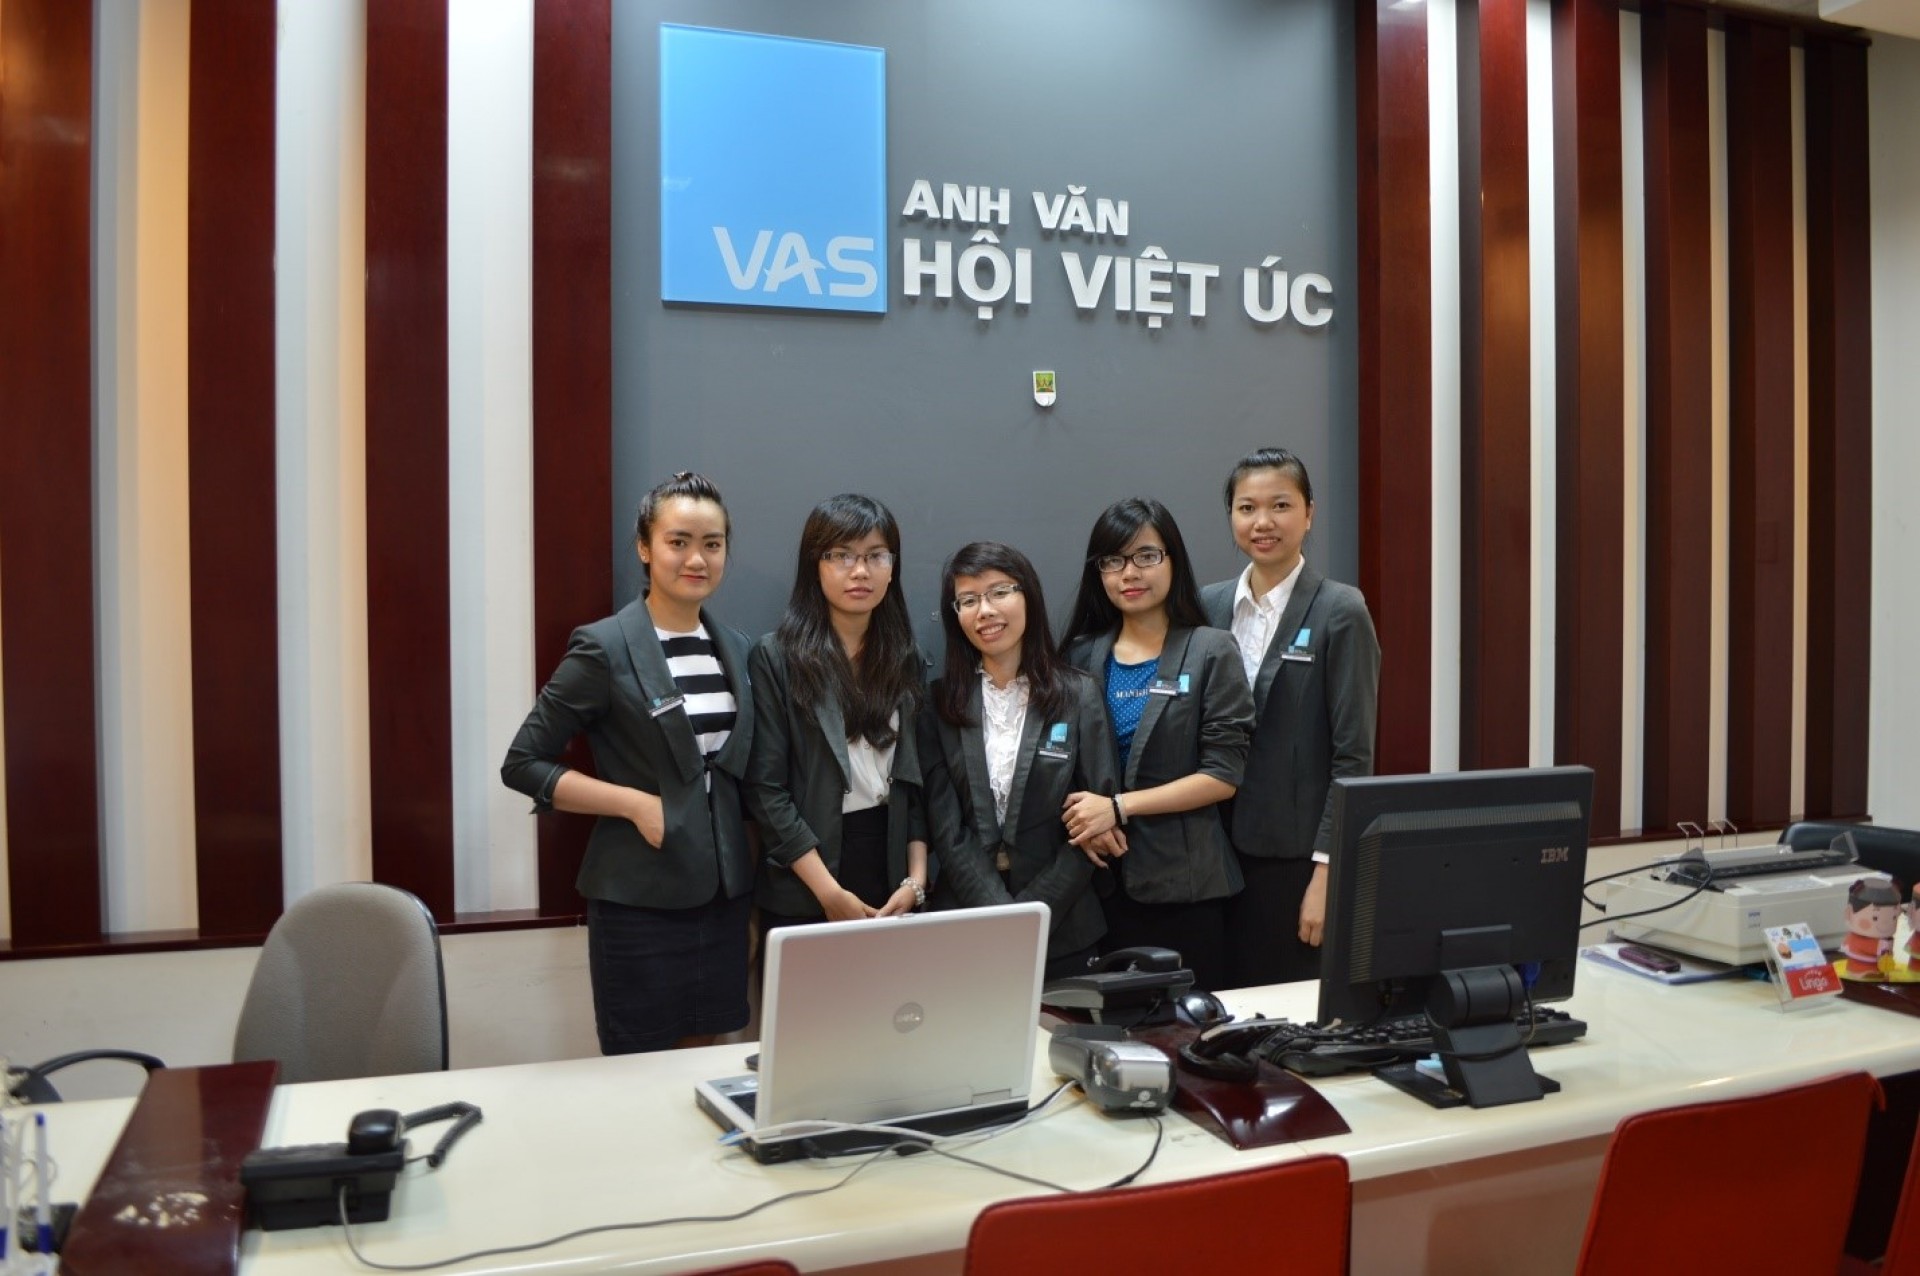 Học viên nói gì về VASA - Anh văn Hội Việt Úc?